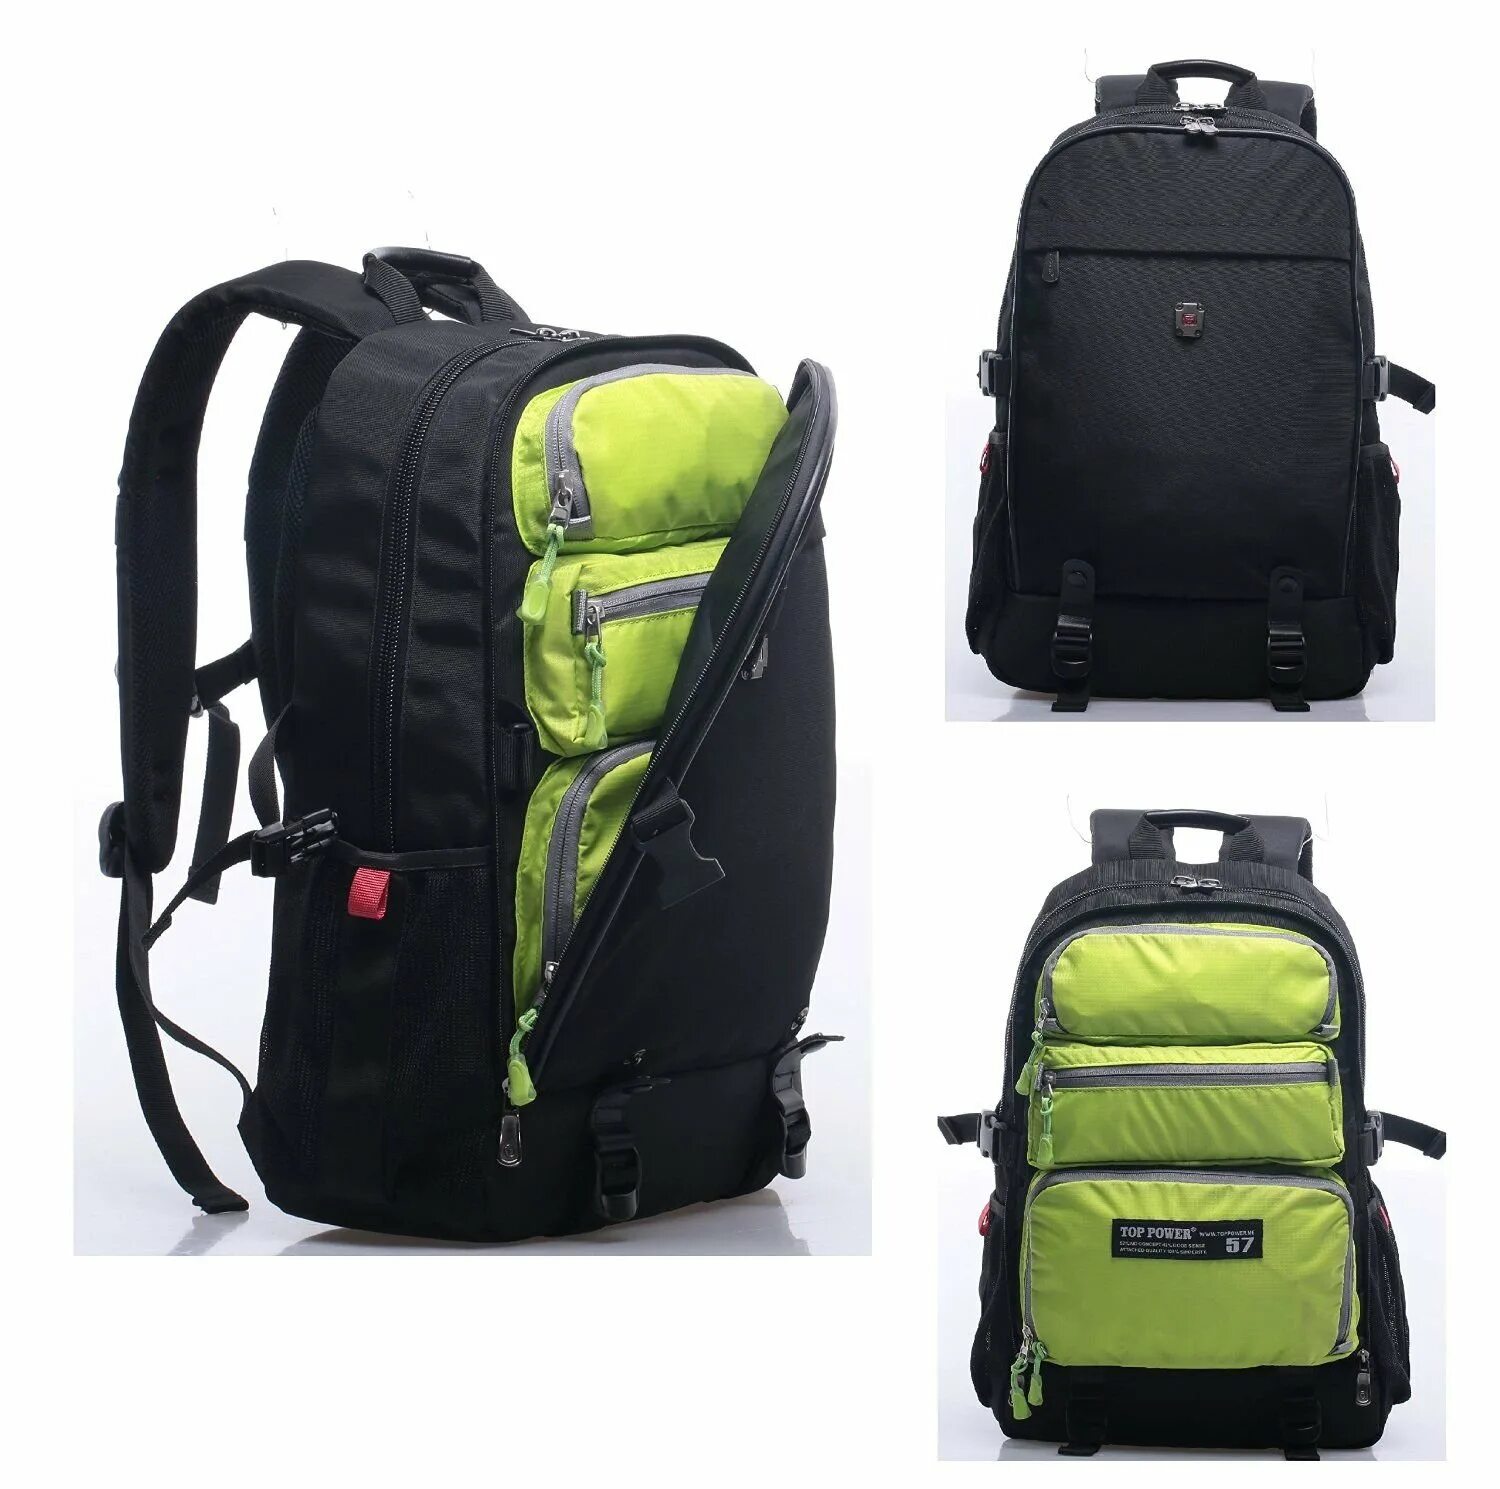 Рюкзак туристический Osprey Farpoint | Fairview Travel Daypack 15 зеленый. Laptop compartment рюкзак. Рюкзак Top Power mj22801ad. Рюкзак спортивный Caribee Comet 32. Рюкзак для ручной клади купить